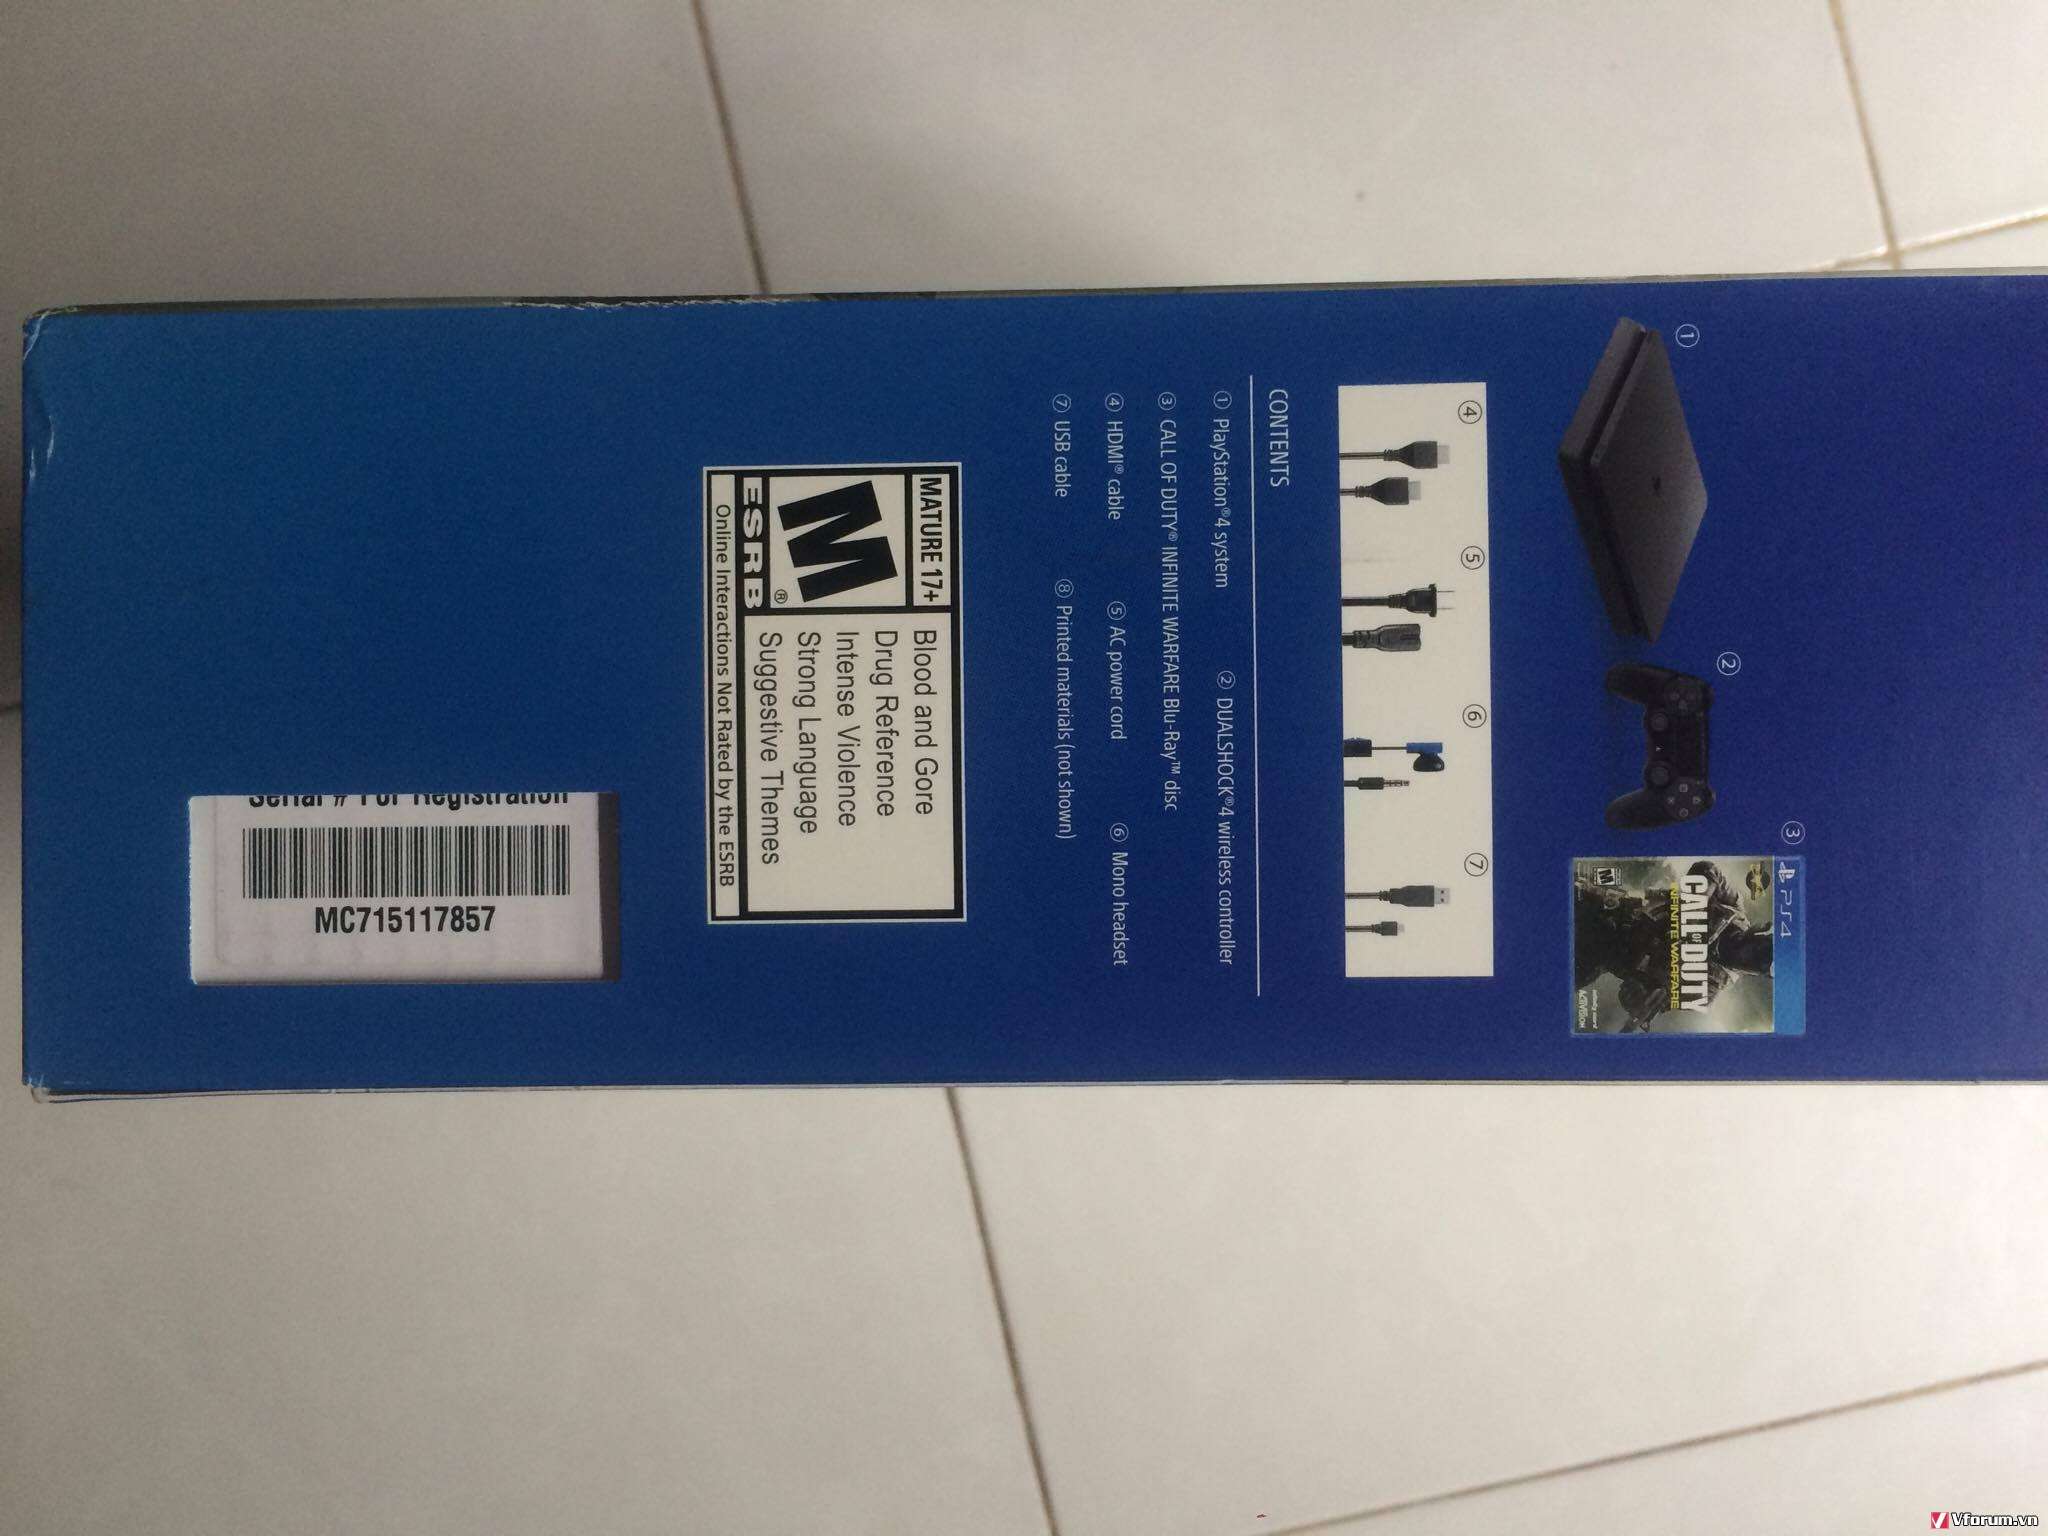 Bán Sony PS4 500GB Jetblack new 100%, Hàng xách tay Mỹ - 1